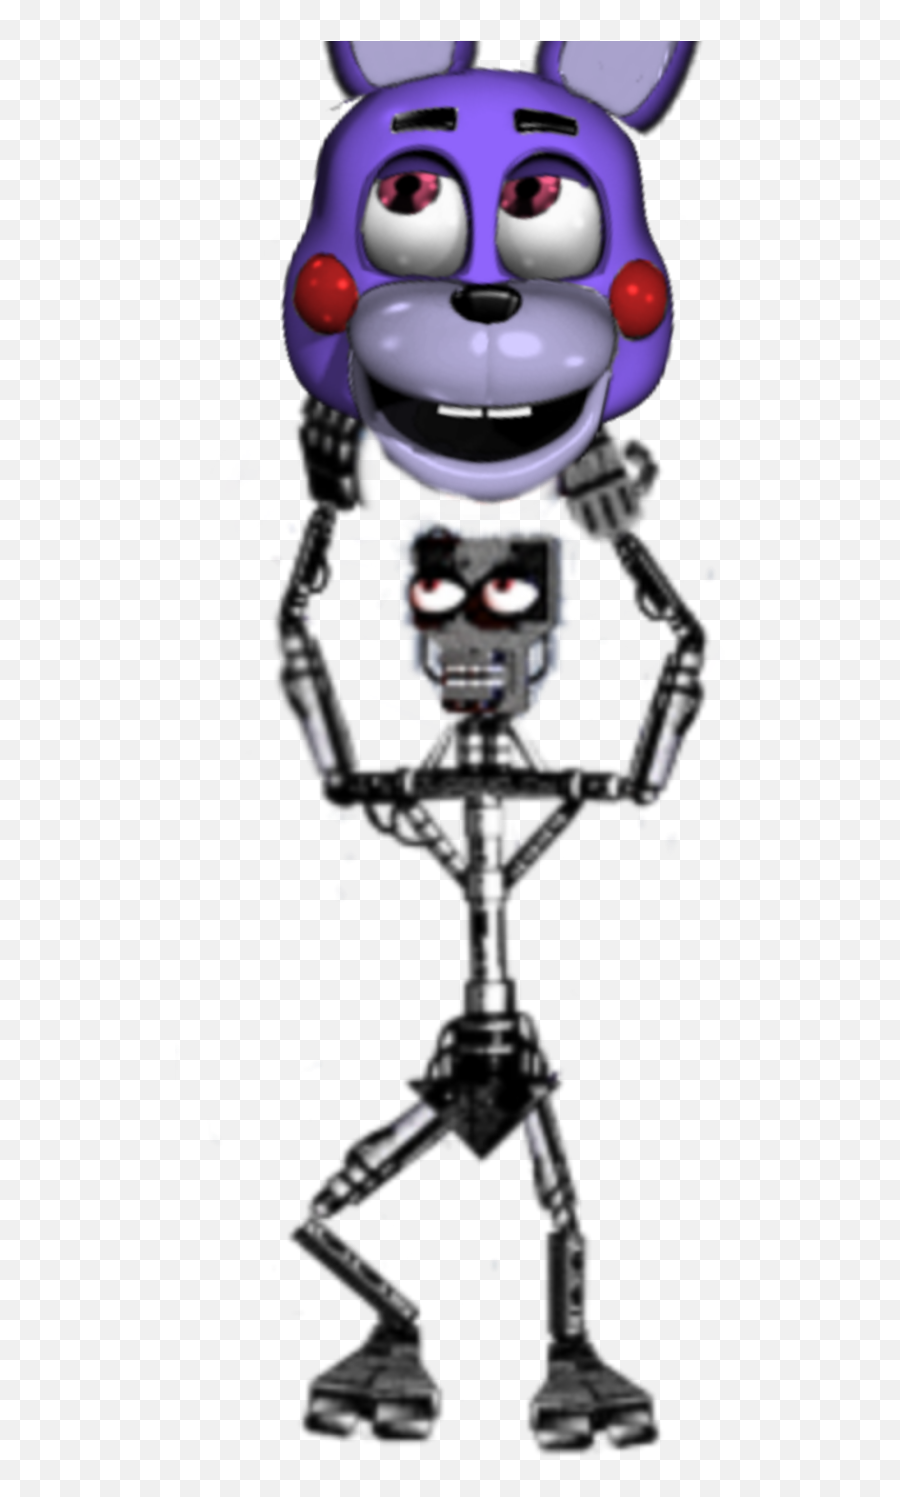 Fnaf6 Endoskeleton Classic Bonnie - Bonnie Endoskeleton Fnaf 1 Emoji,O_o Emoji